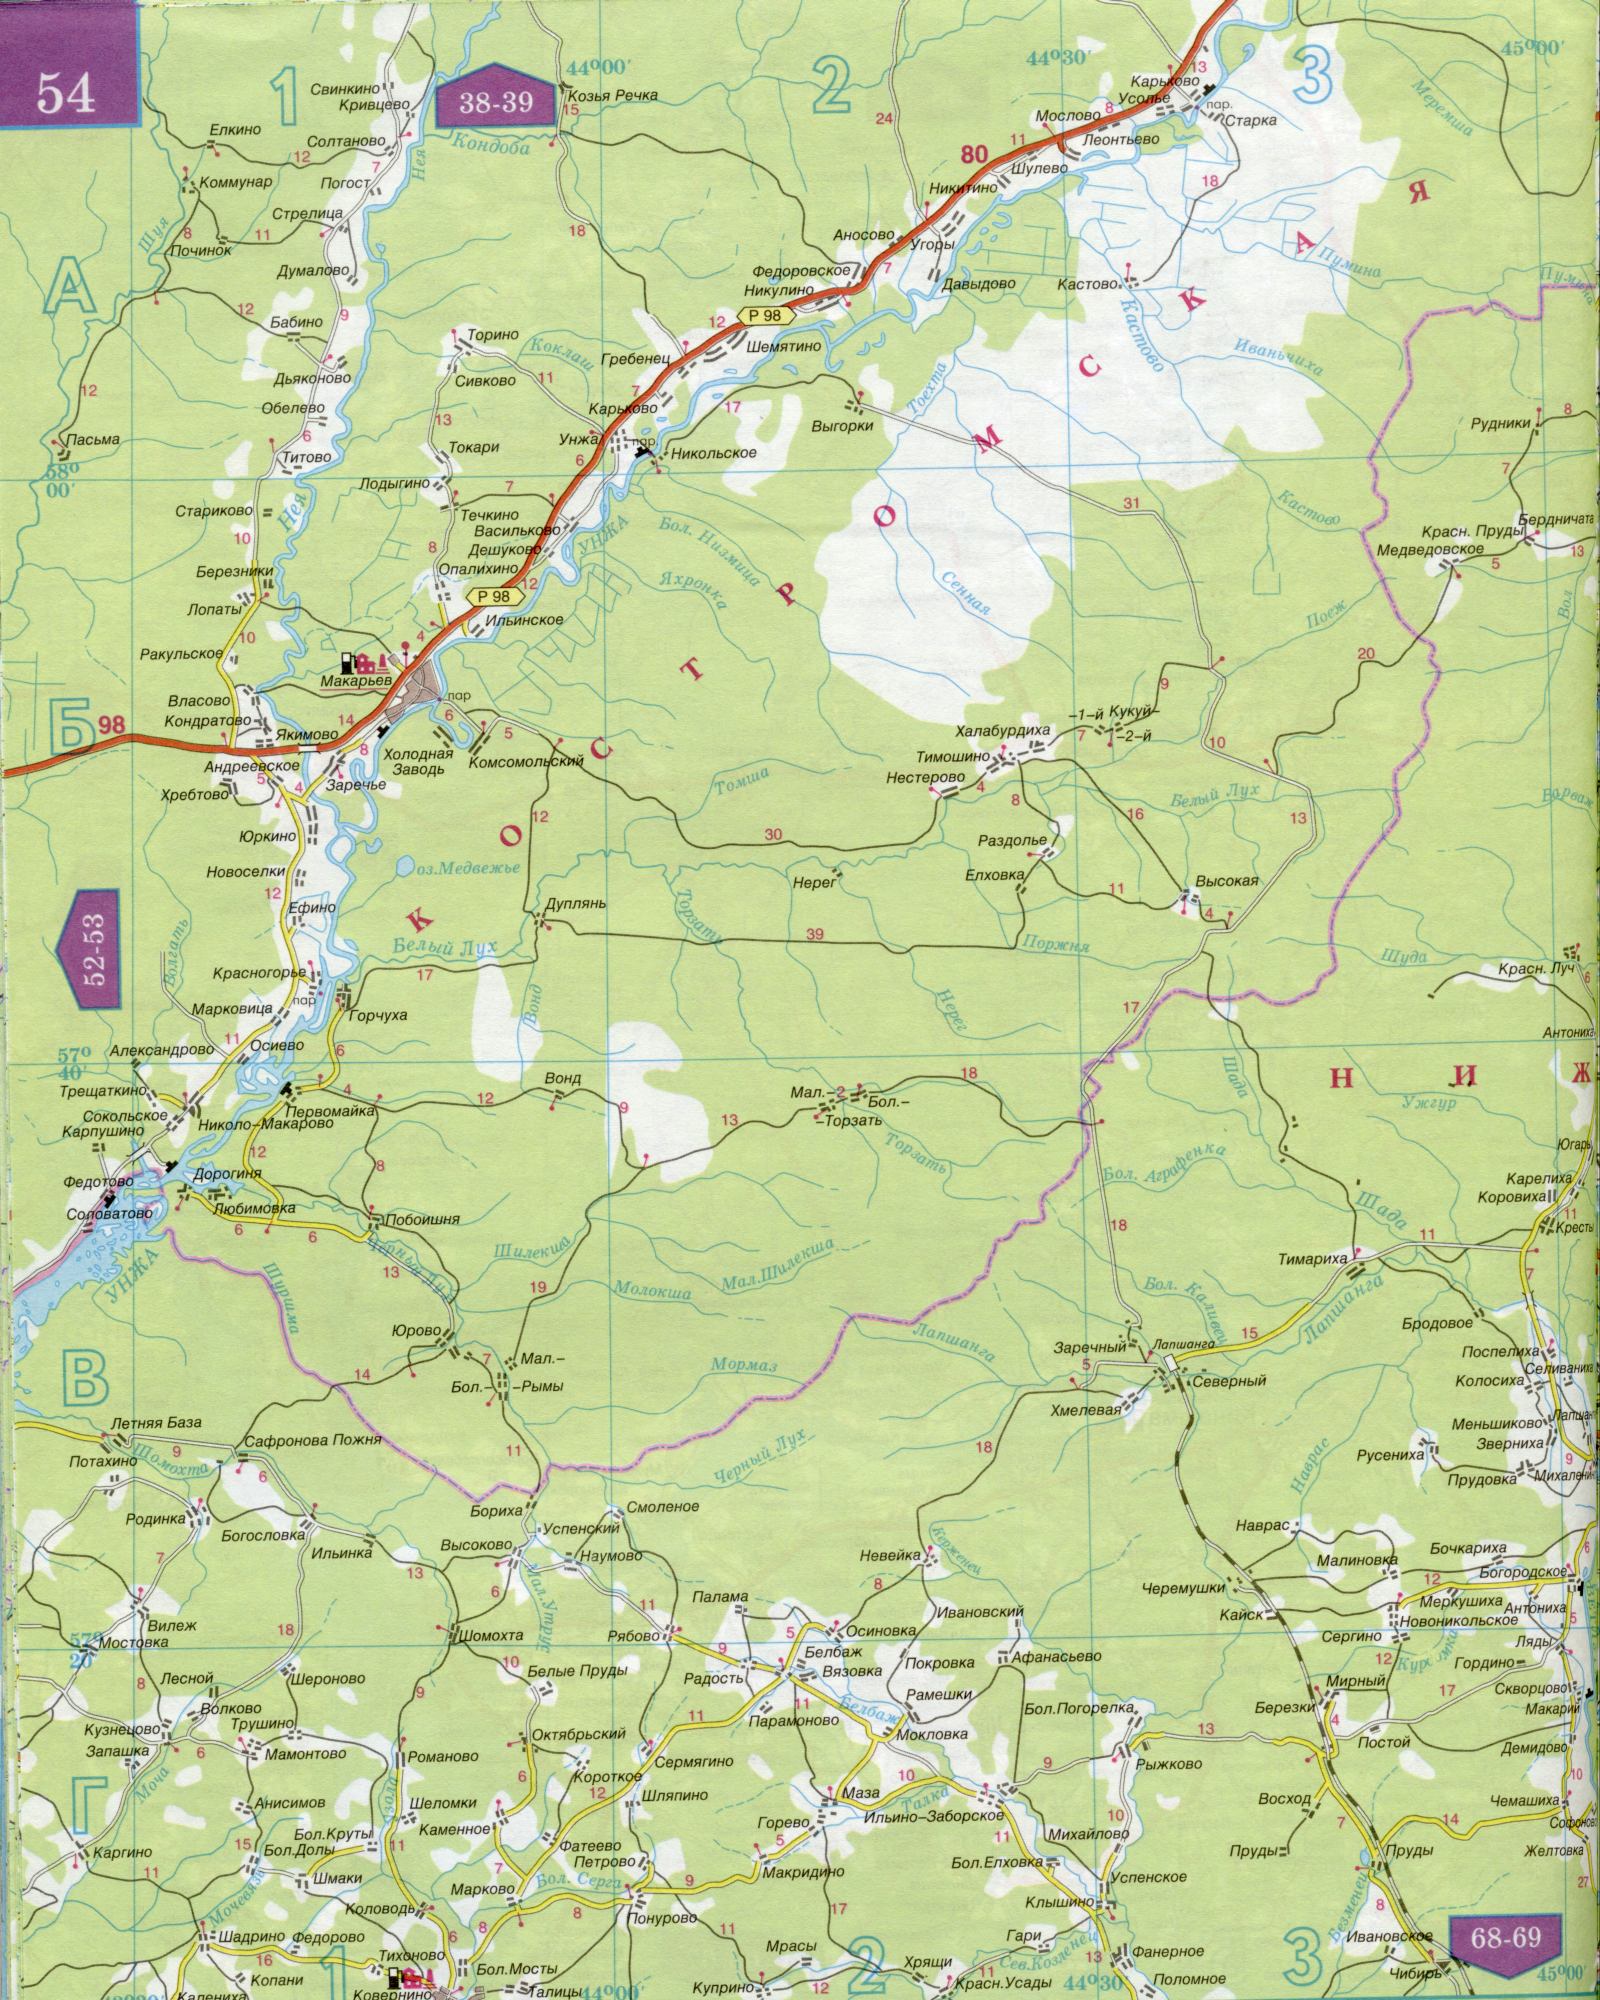 Карта Костромской области 1см=5км. Карта автомобильных дорог Костромская область. Скачать бесплатно подробную карту , C1 - река Шада